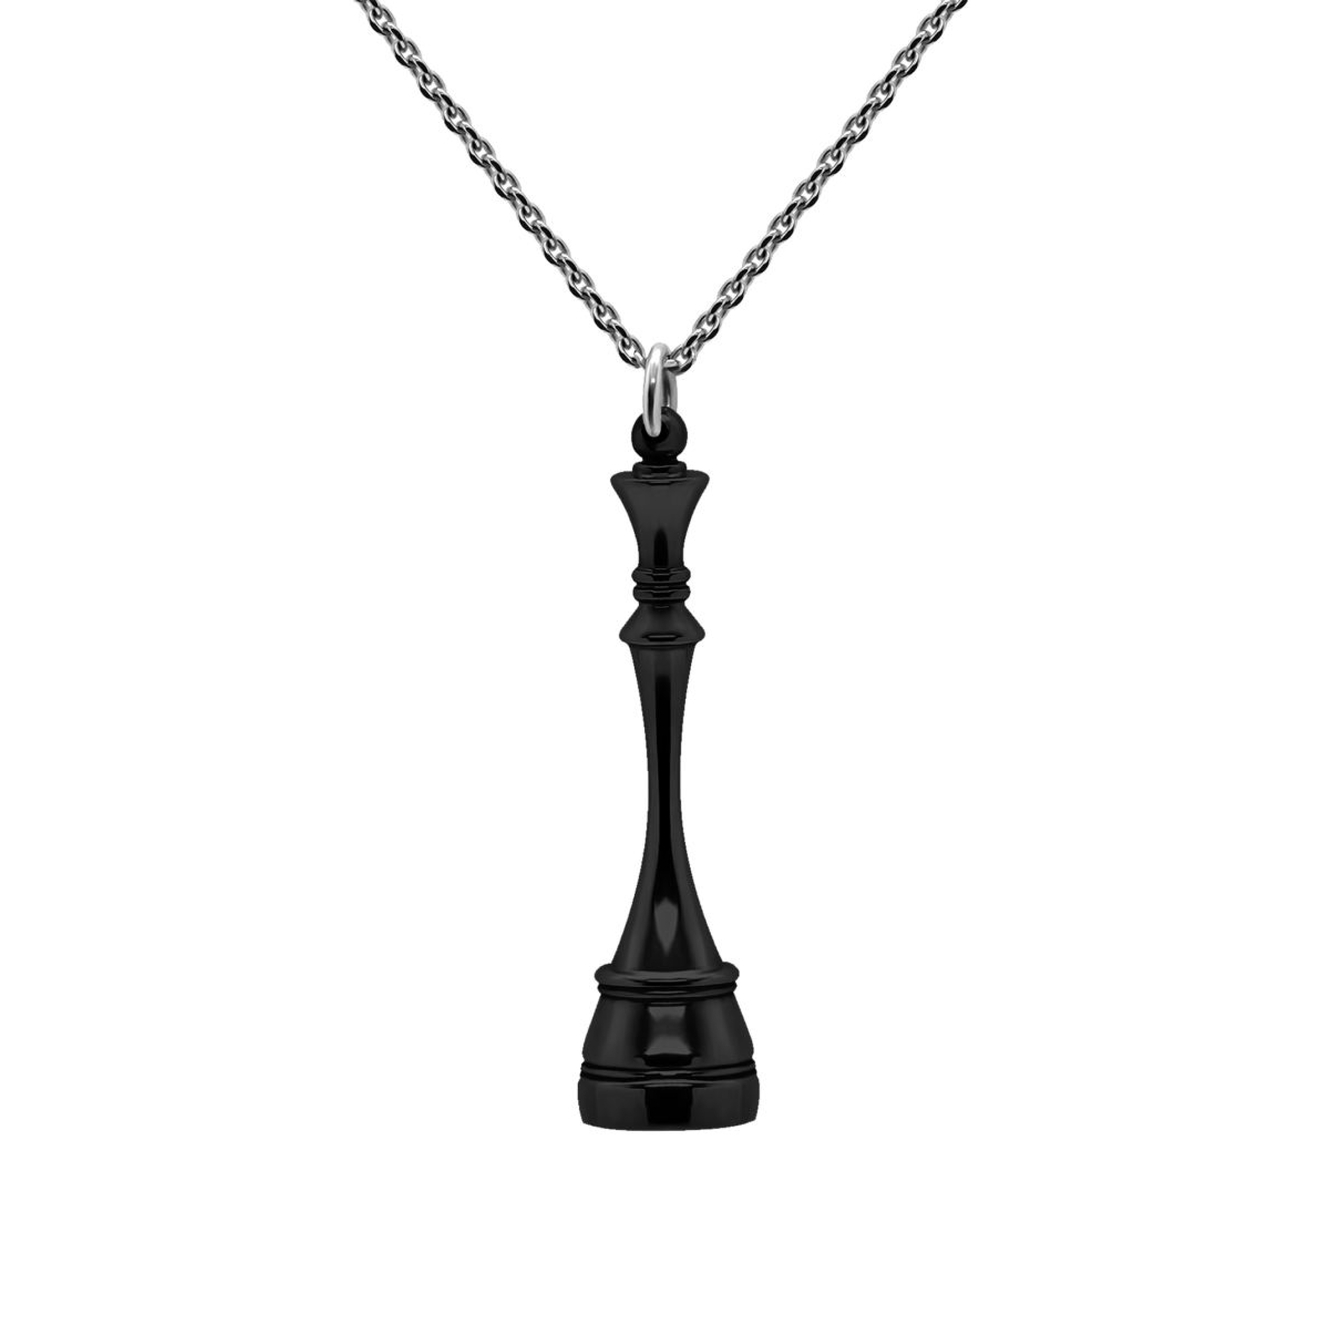 Prosto Jewelry Подвеска Королева Black из серебра подвеска серебряная prosto jewelry слон 1 шт